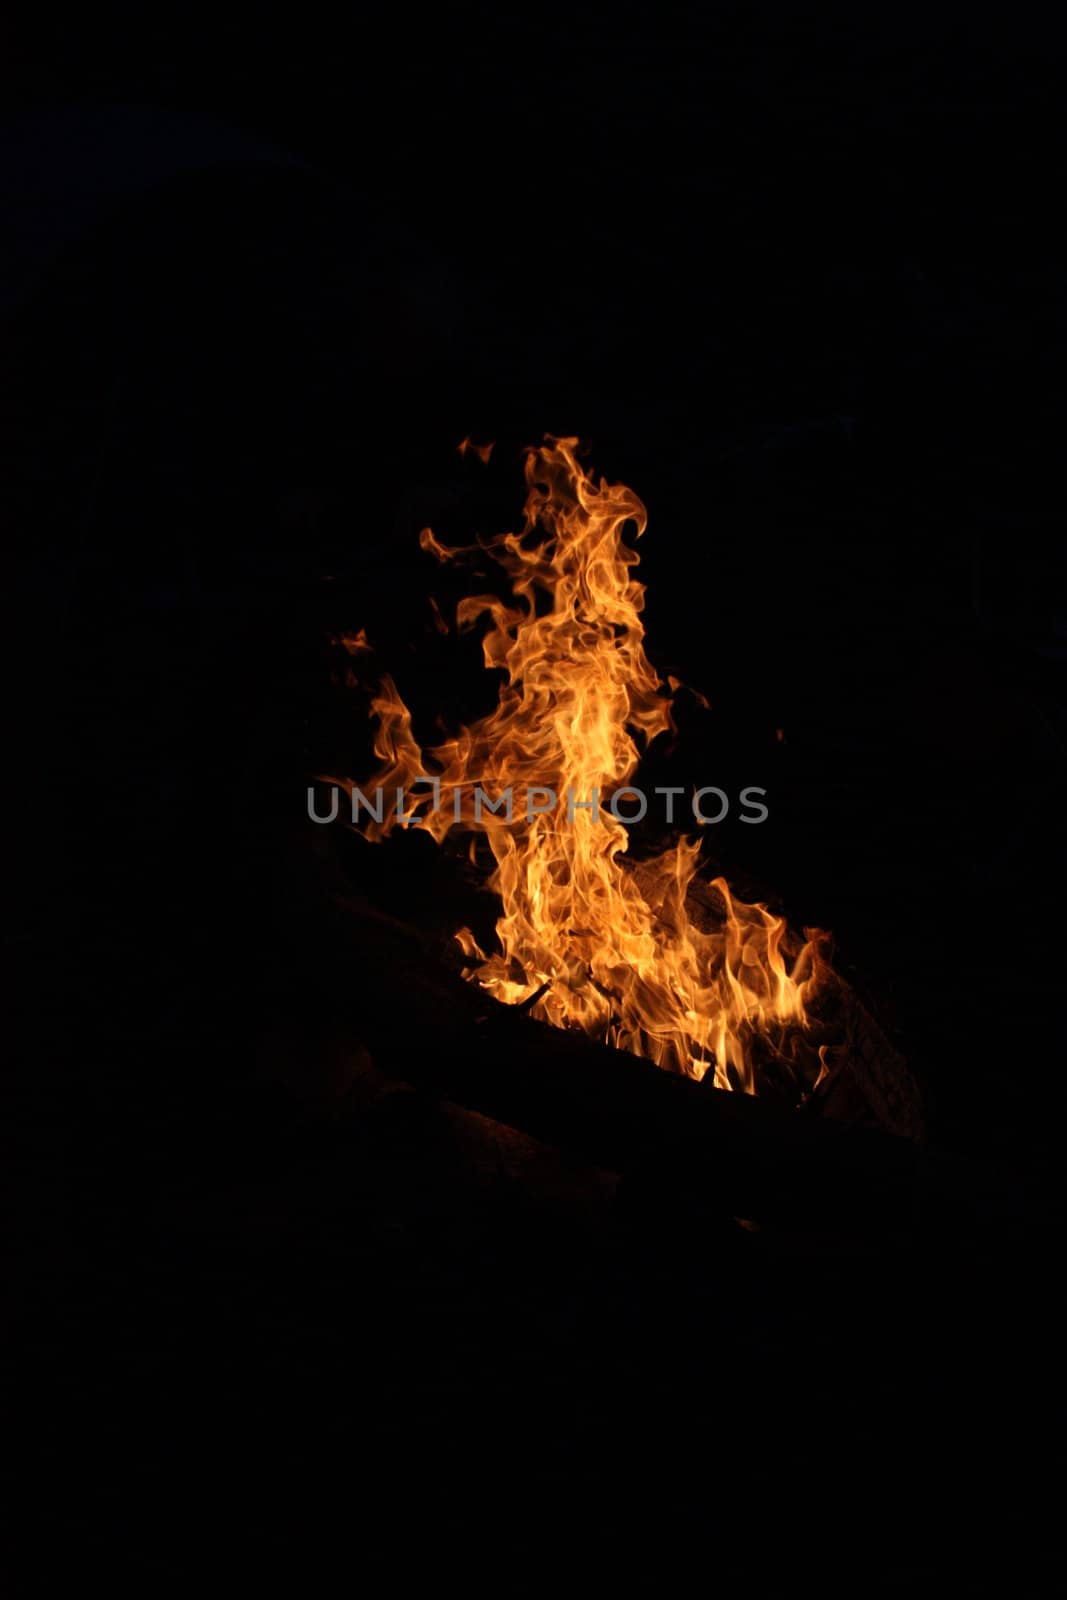 Flames at night by chrisga